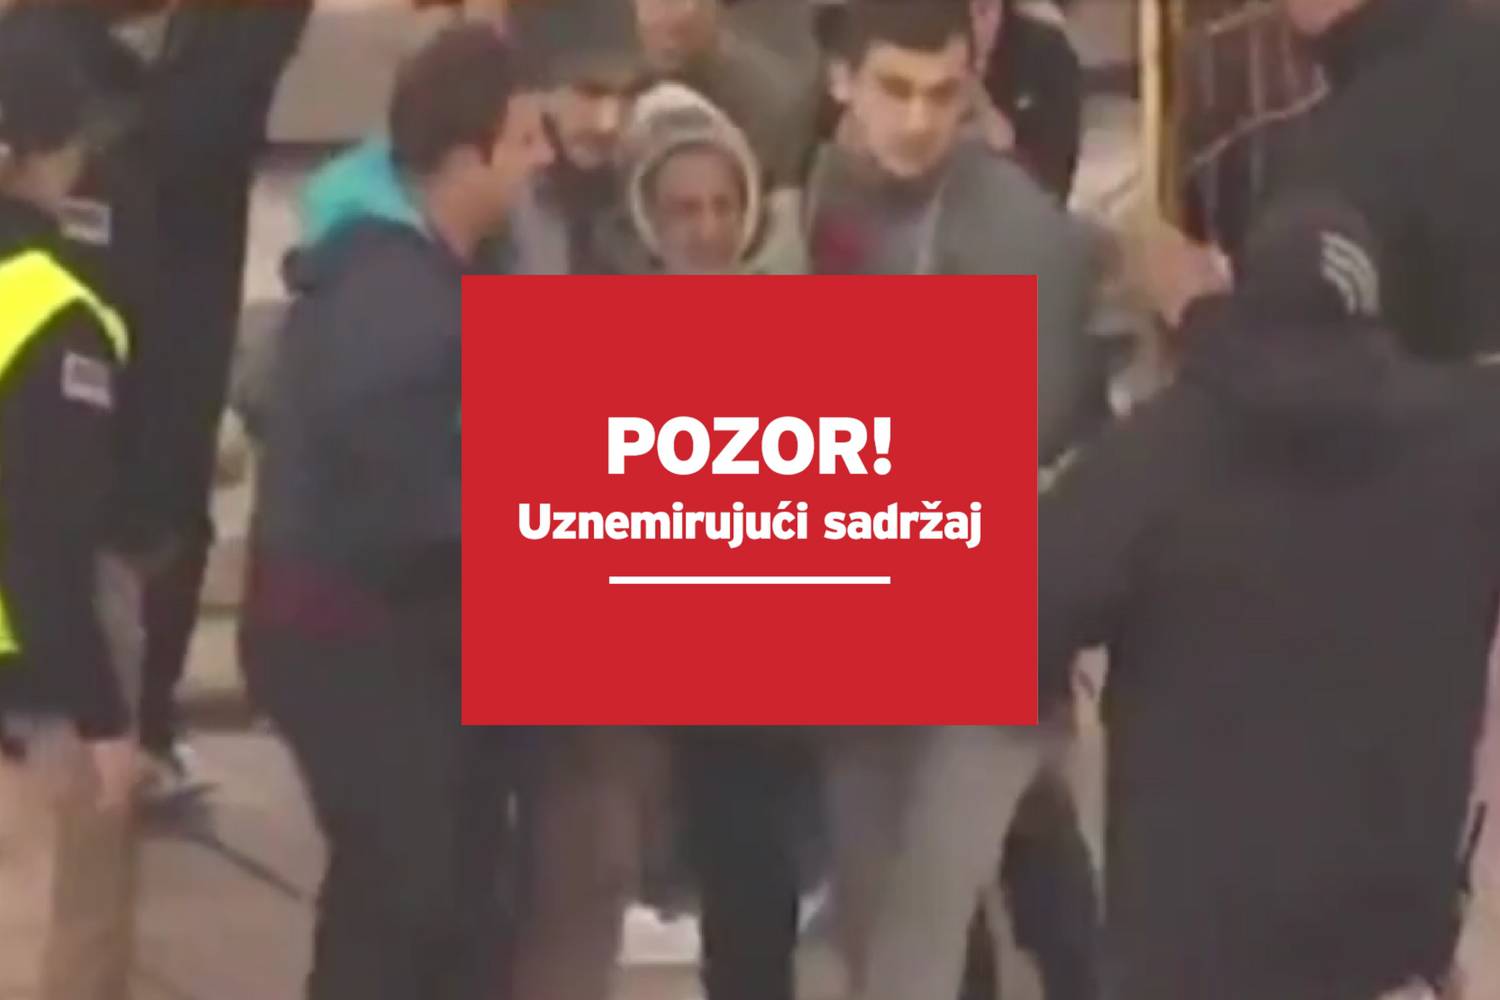 Užas u Sarajevu: Topovski udar raznio nogu domaćem navijaču!